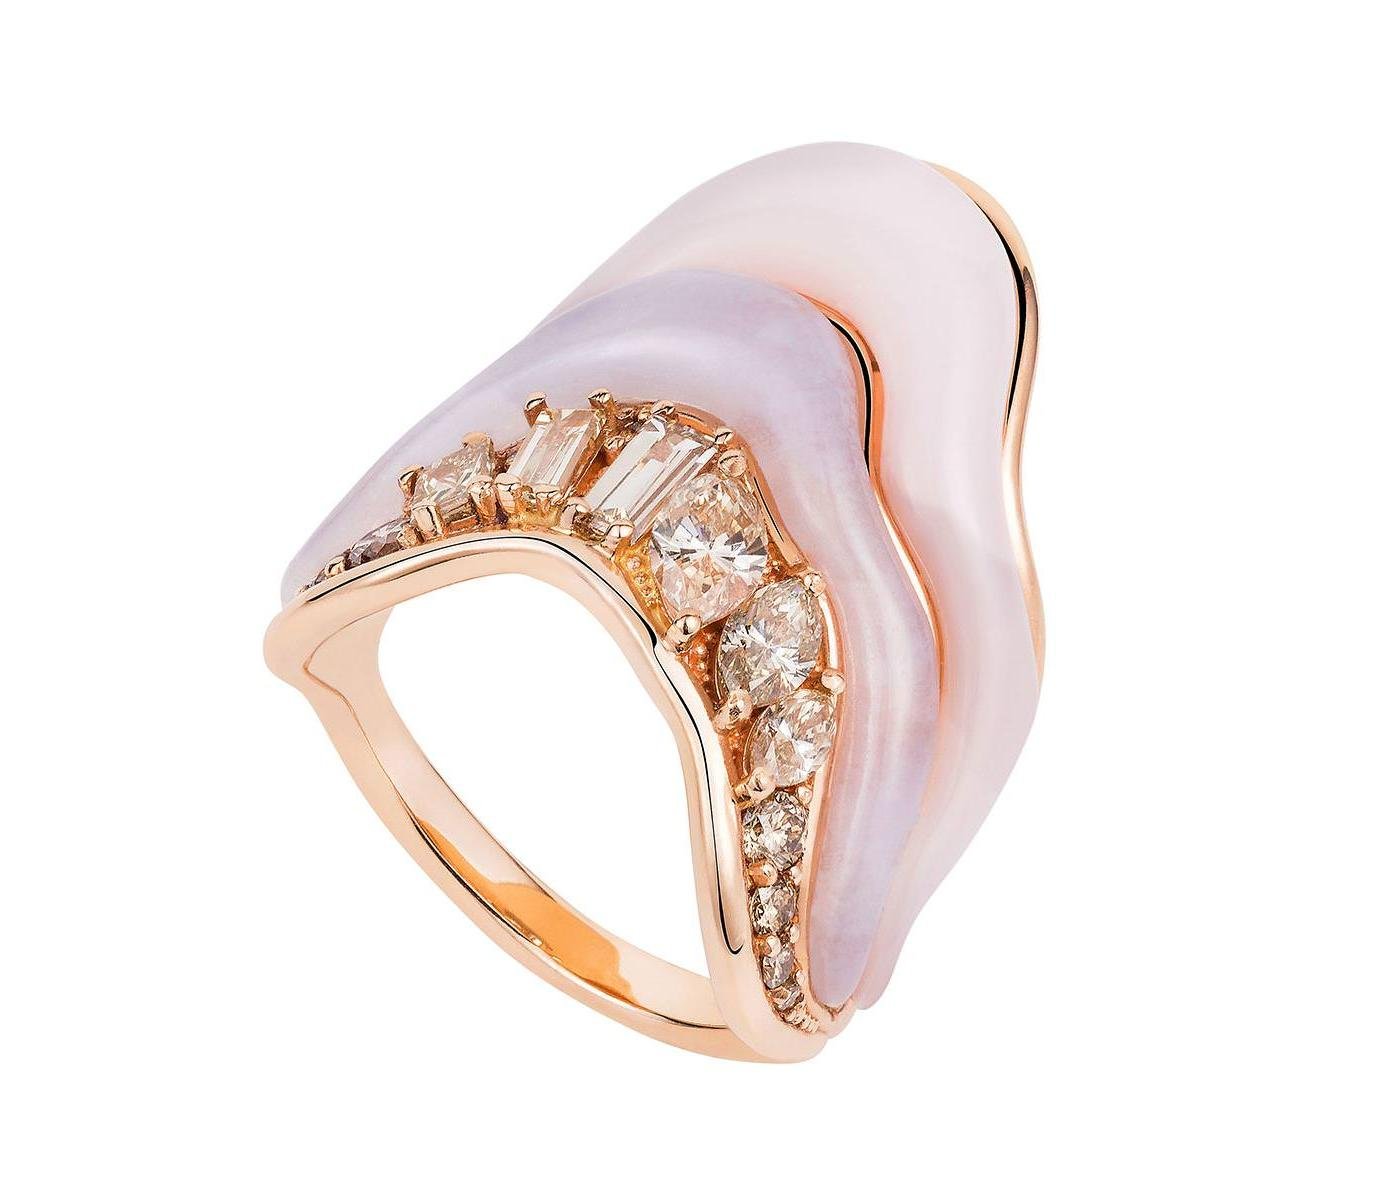 Ring by Fernando Jorge